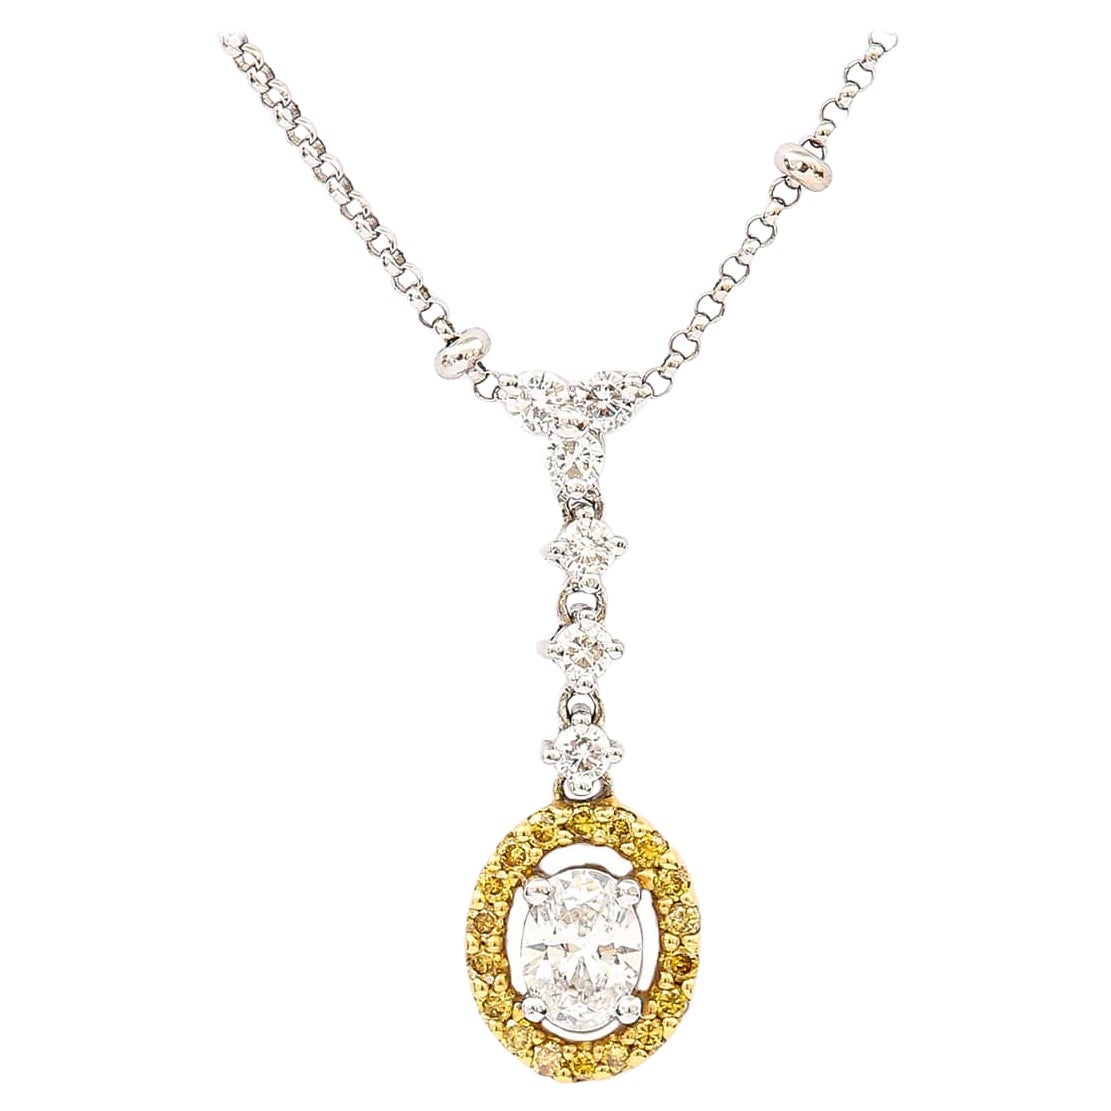 Collier pendentif contemporain en or 18 carats avec halo de diamants blancs et jaunes